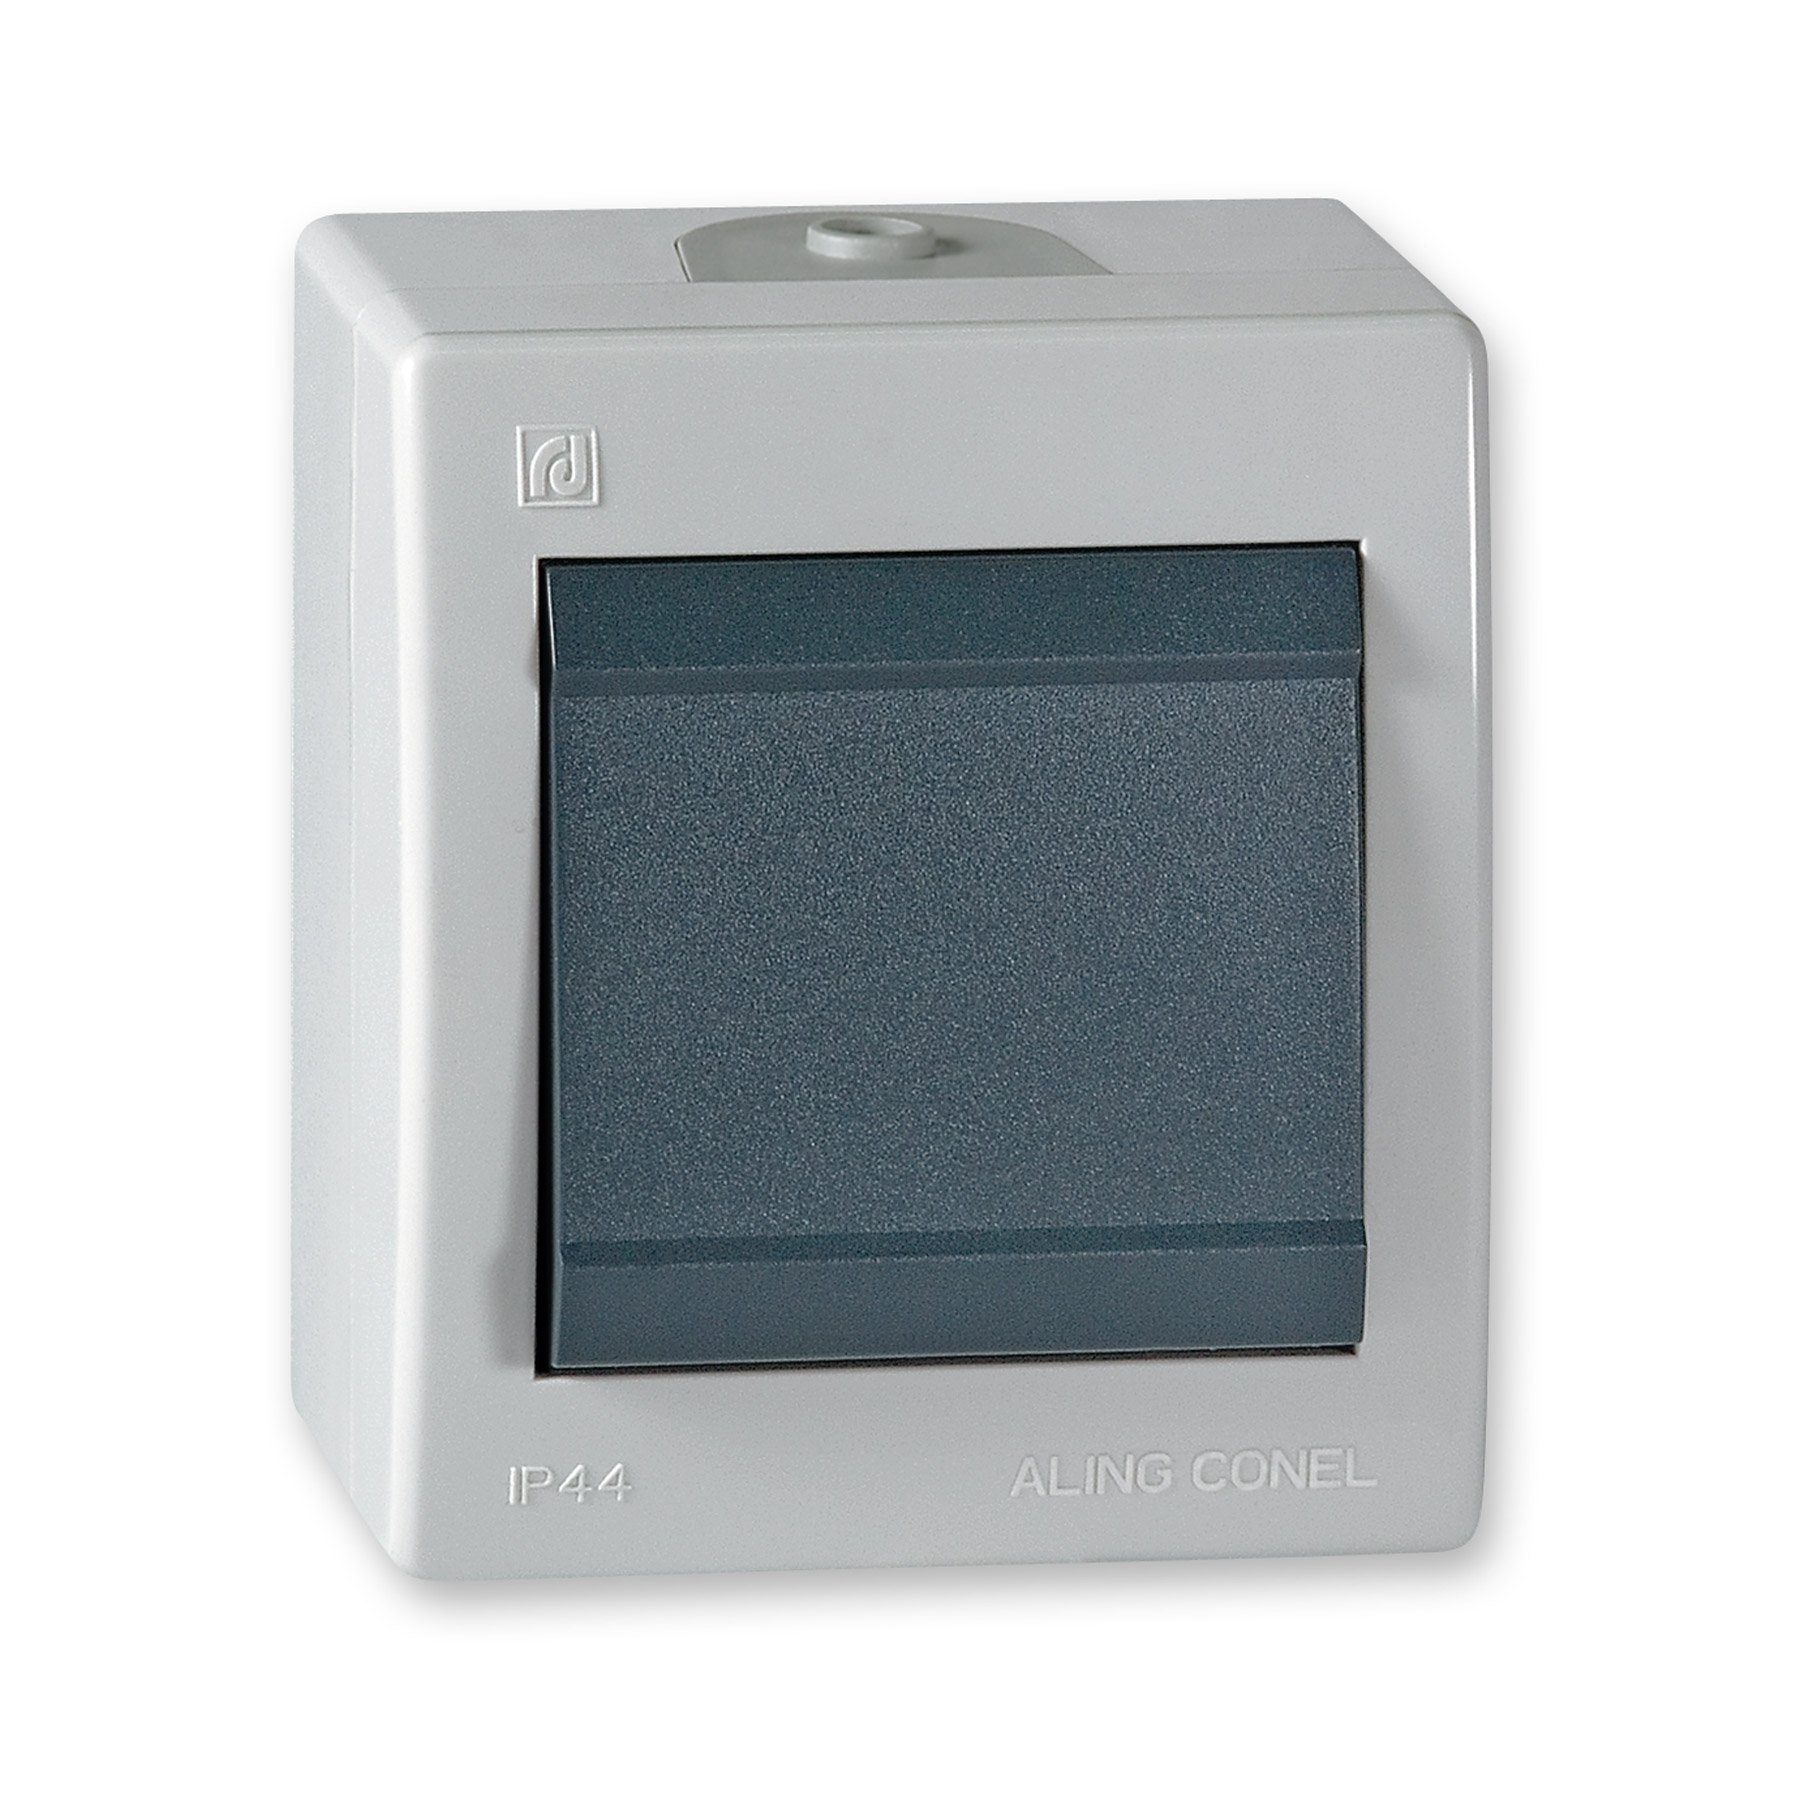 Aling Conel Lichtschalter Power Line Aufputz-Schalter ohne Glimmlampe (Packung), IP 44 grau